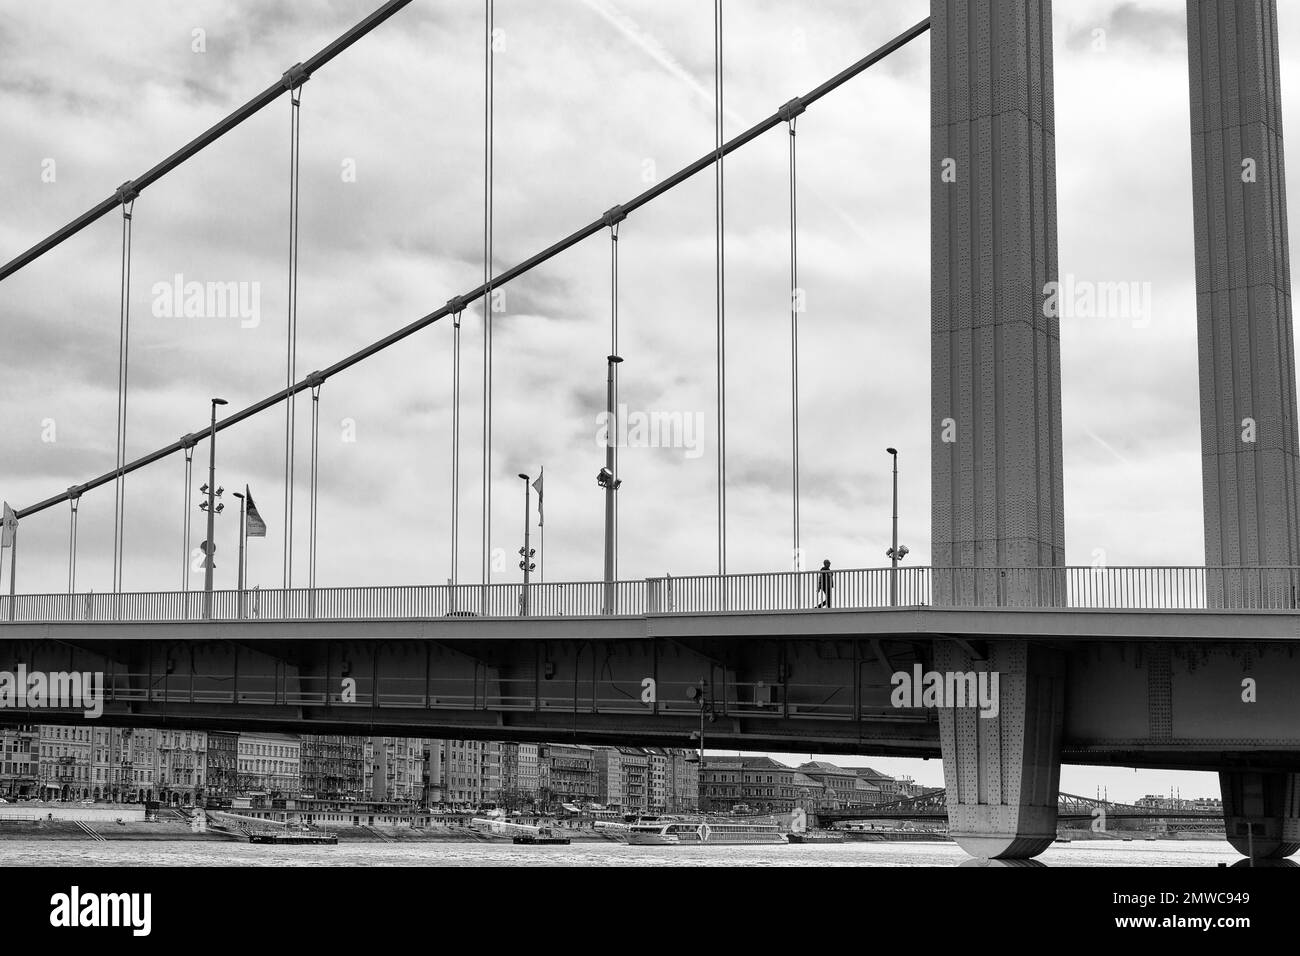 Fußgängerzone über Stahlbrücke, Elisabeth-Brücke, Donau, Budapest, Ungarn Stockfoto